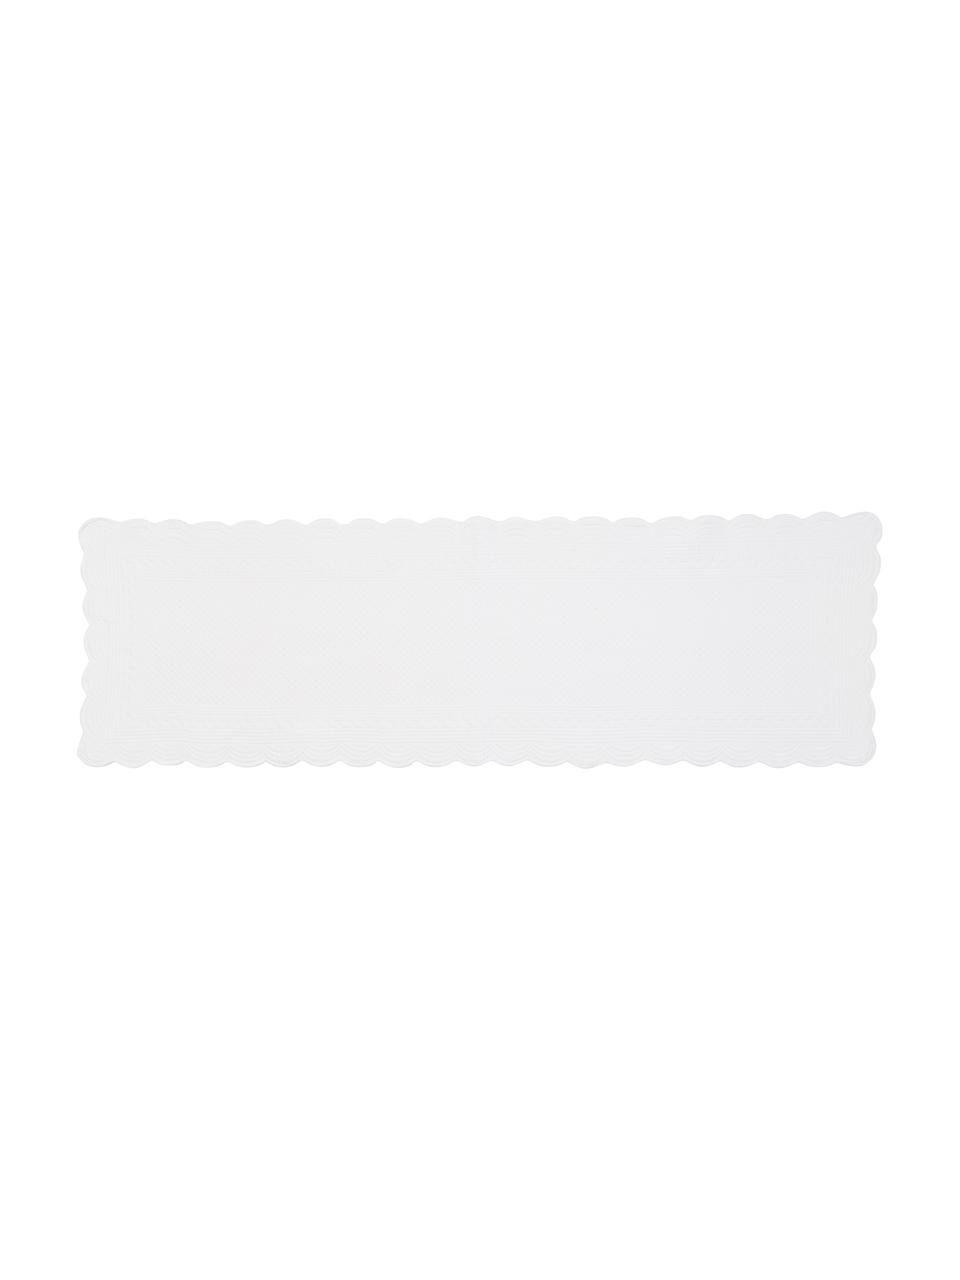 Baumwoll-Tischläufer Boutis mit Verzierungen und runden Kanten, Baumwolle, Weiß, 50 x 150 cm